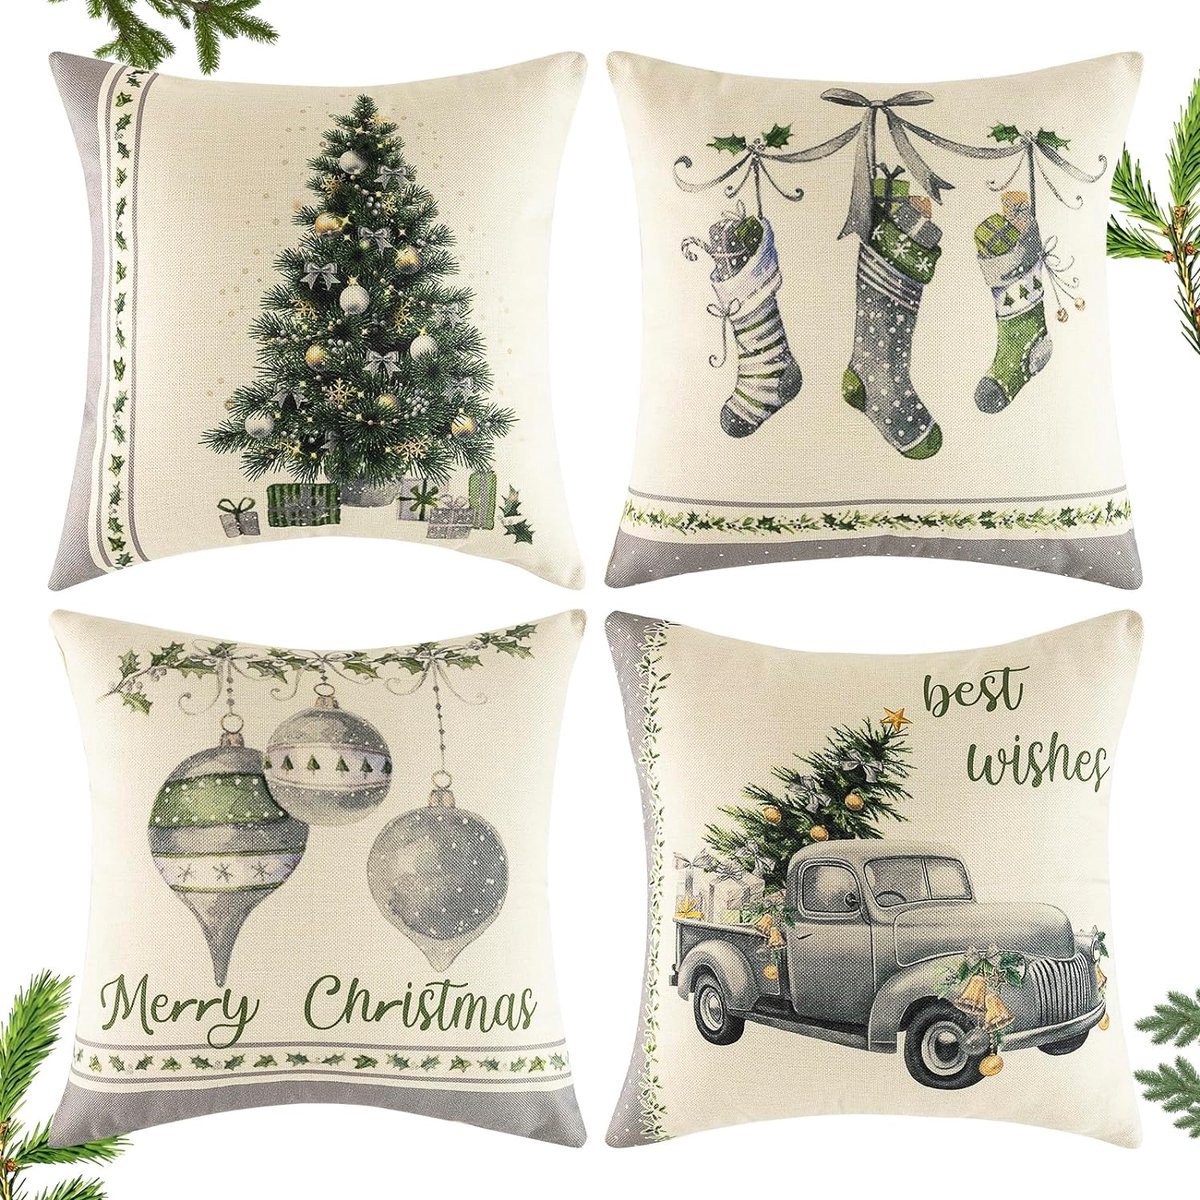 Kussenslopen voor Kerstmis, 4 stuks, 45 x 45 cm, kussensloop Kerstmis linnen kussenslopen, Elk Kerstman patroon kerst kussen - grijze stijl